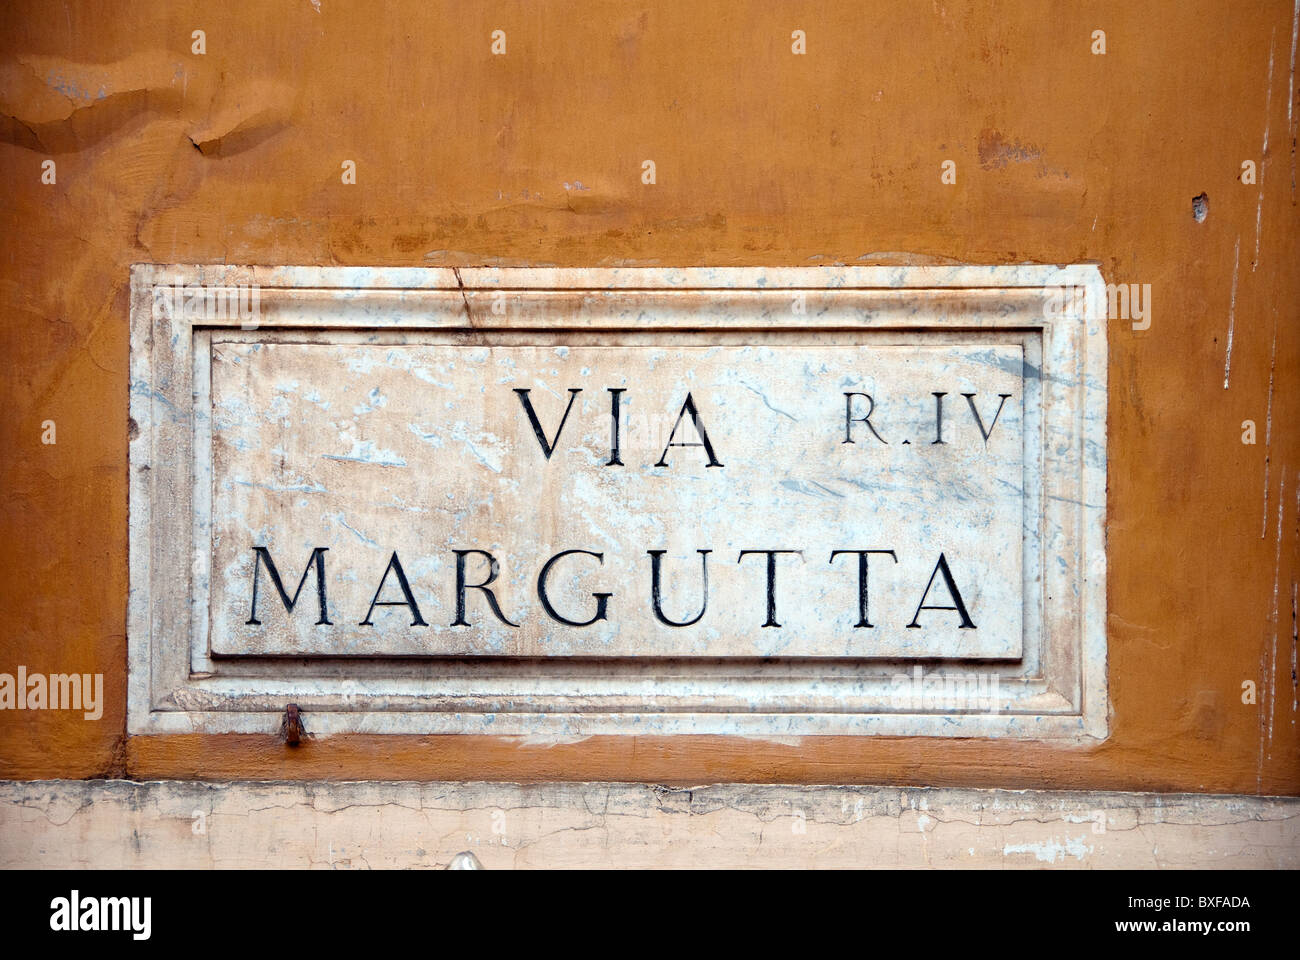 Via Margutta, Rome Stock Photo